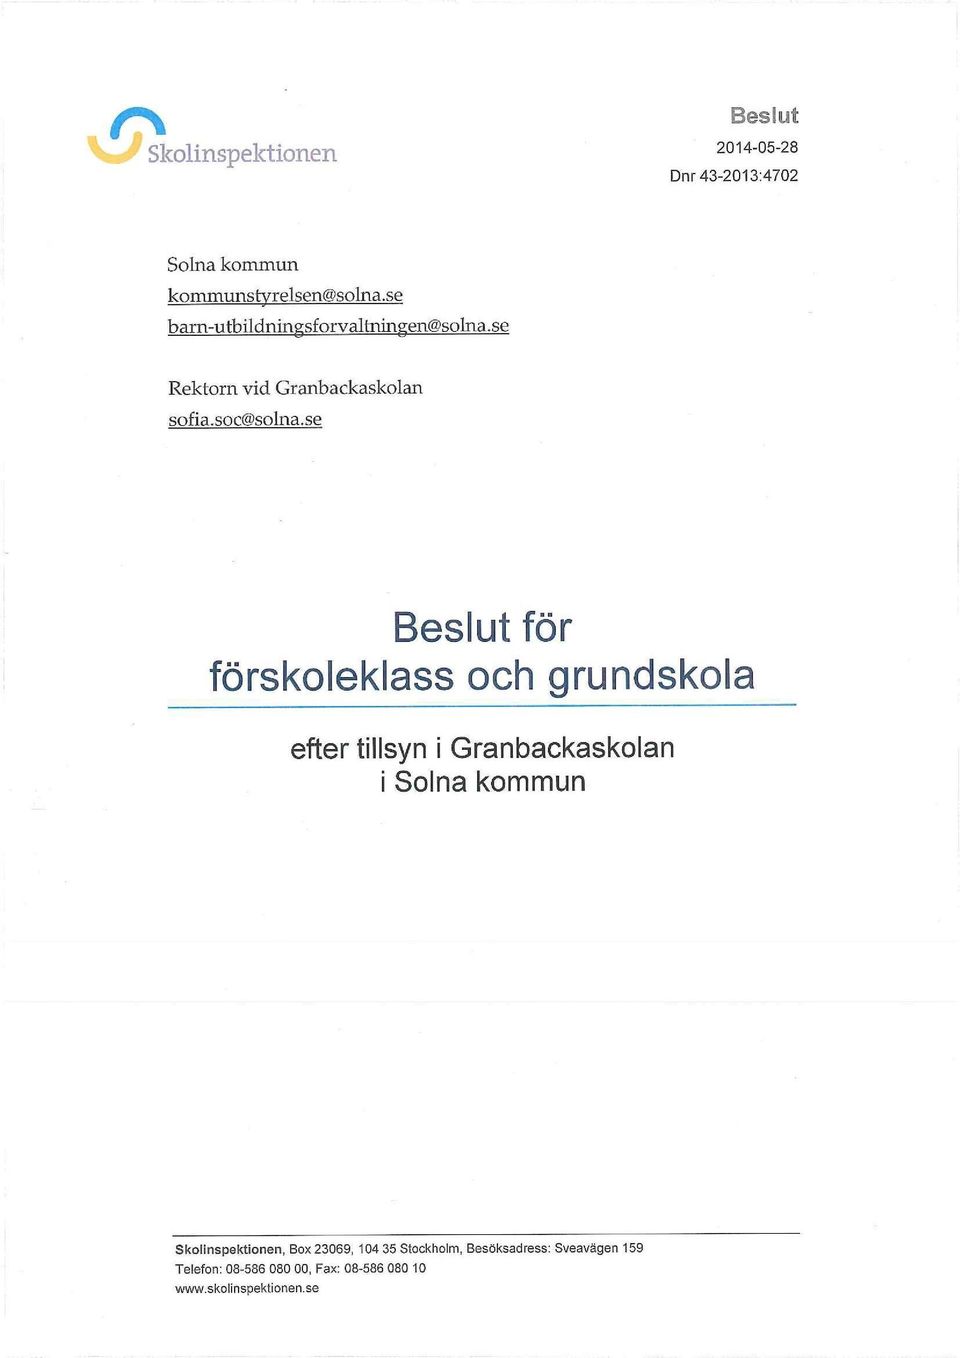 se Beslut för förskoleklass och grundskola efter tillsyn i Granbackaskolan i Solna kommun